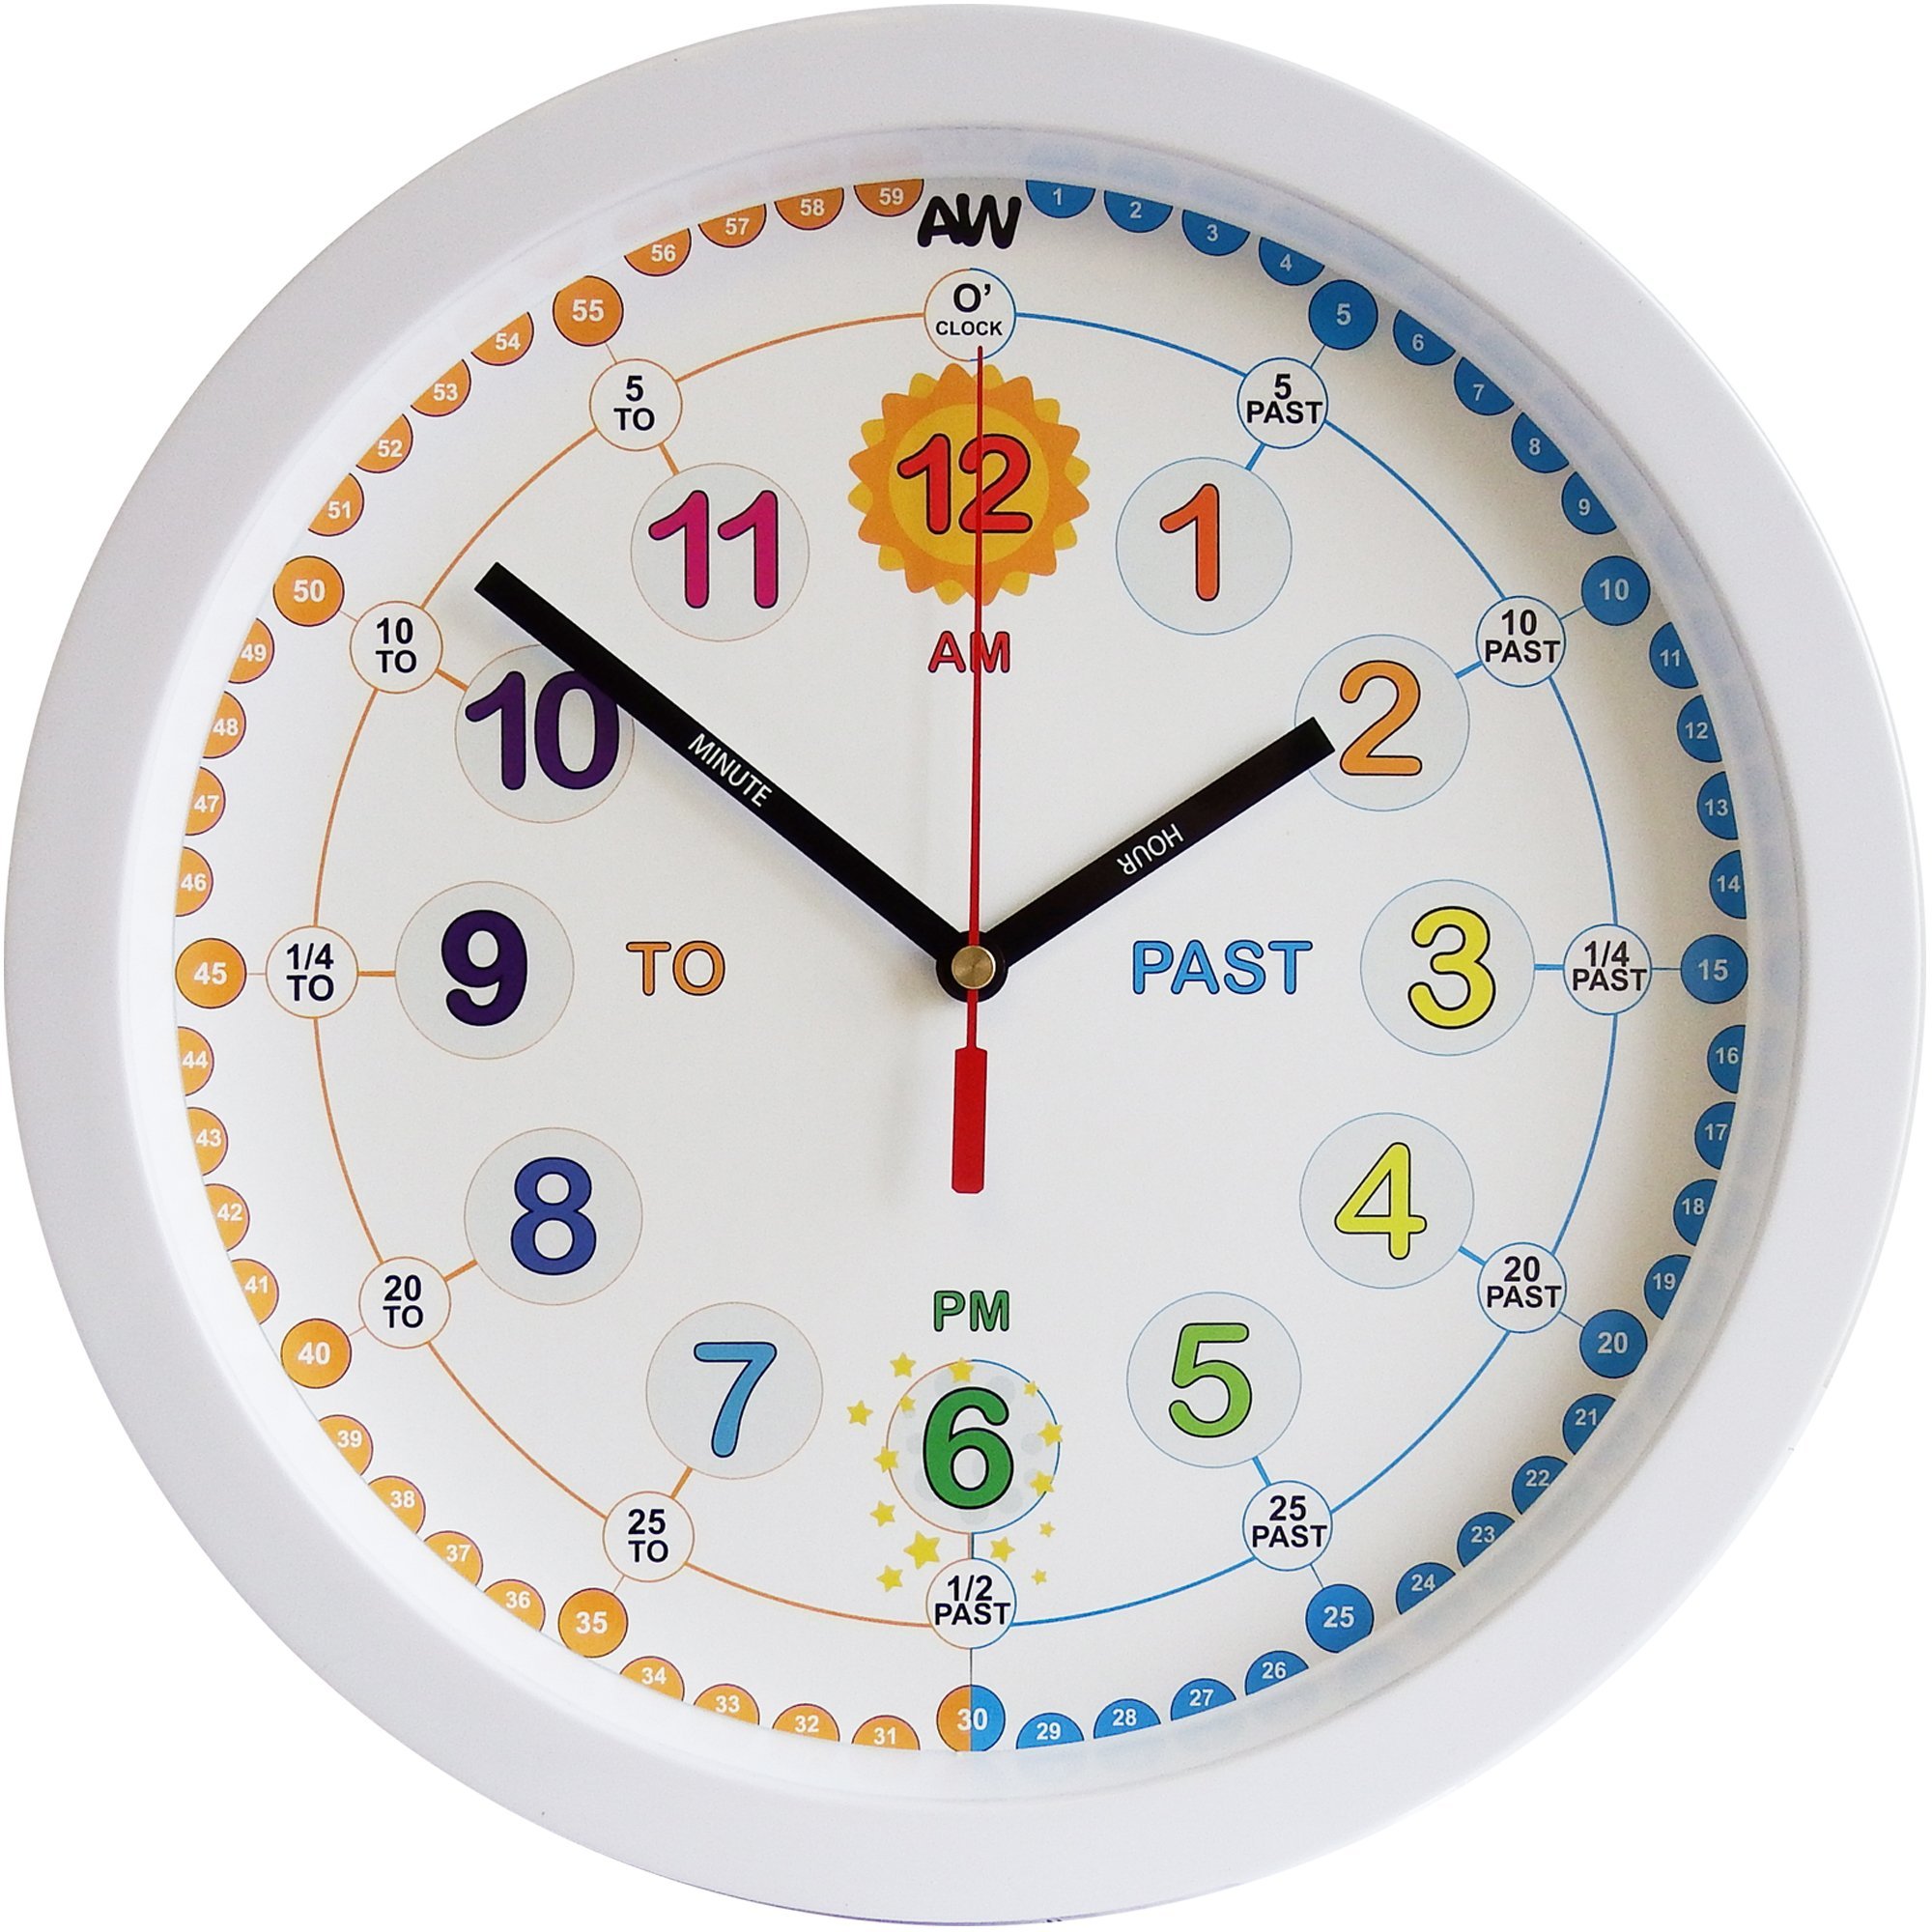 Определить модель часов. Часы картинка. Часы картинка для детей. Модель часов. Часики картинка для детей.